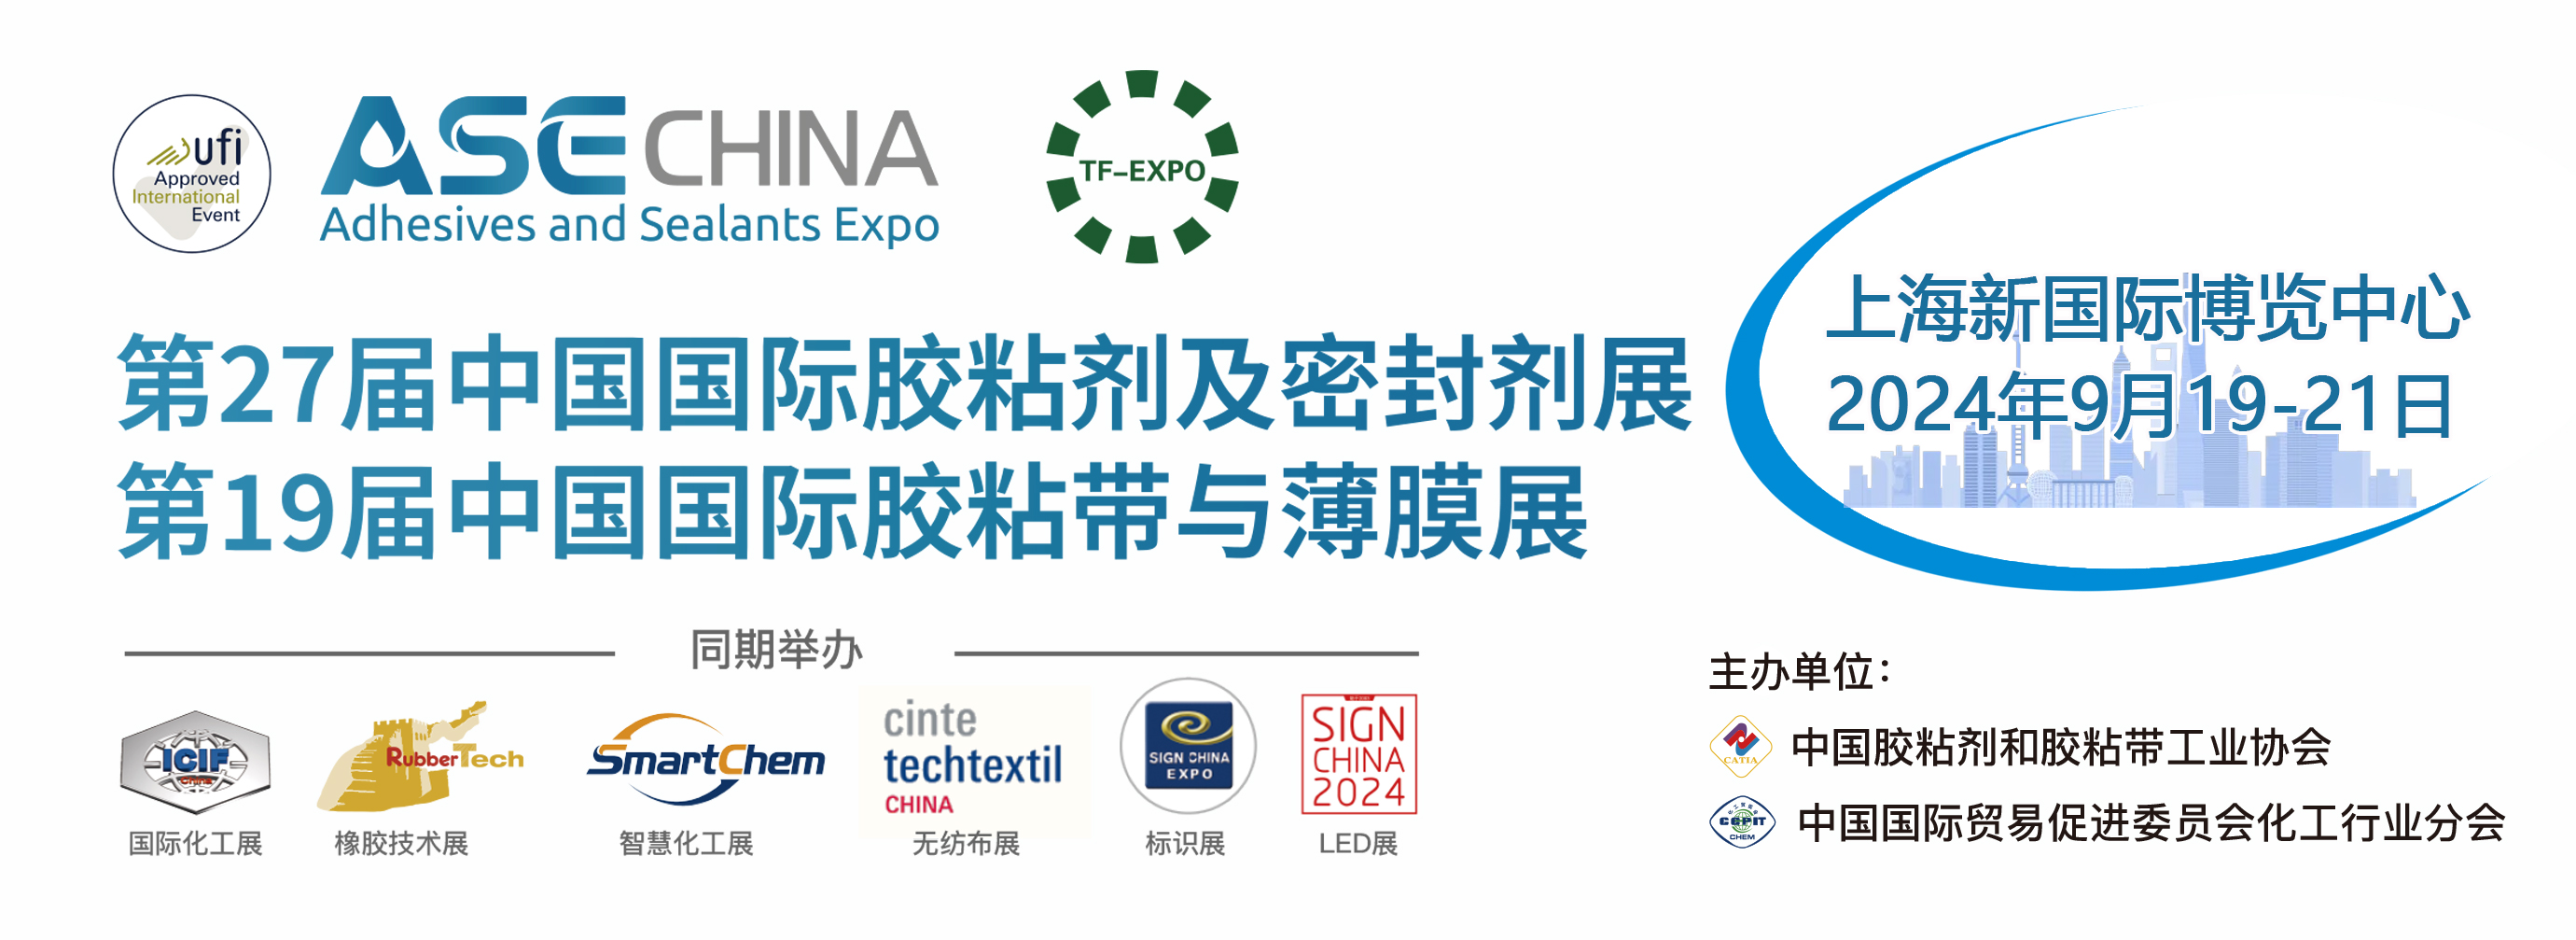 第27届中国国际胶粘剂及密封剂展览会ASE CHINA